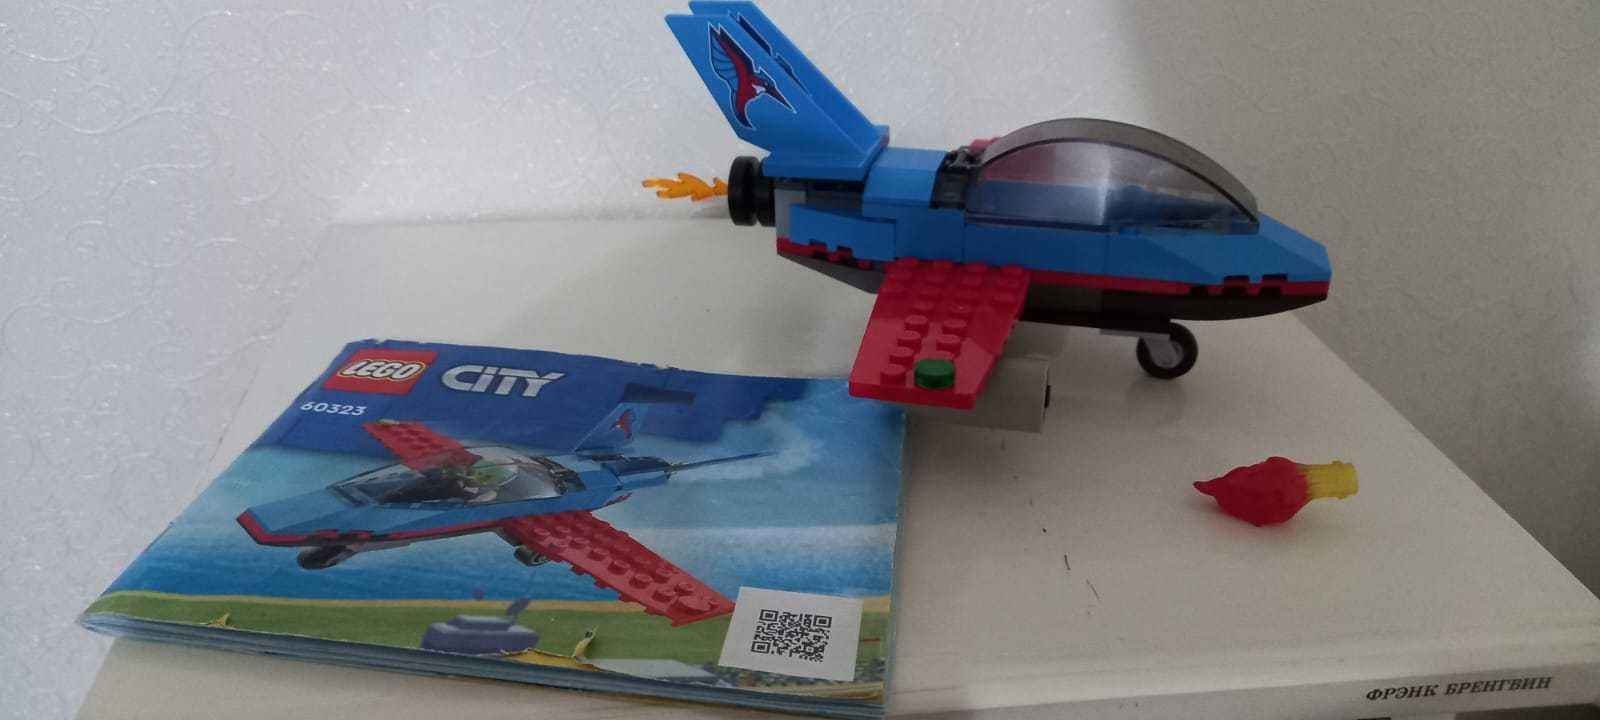 Конструктор Lego City Оригинал - 60323 Трюковый Самолёт (без пилота)